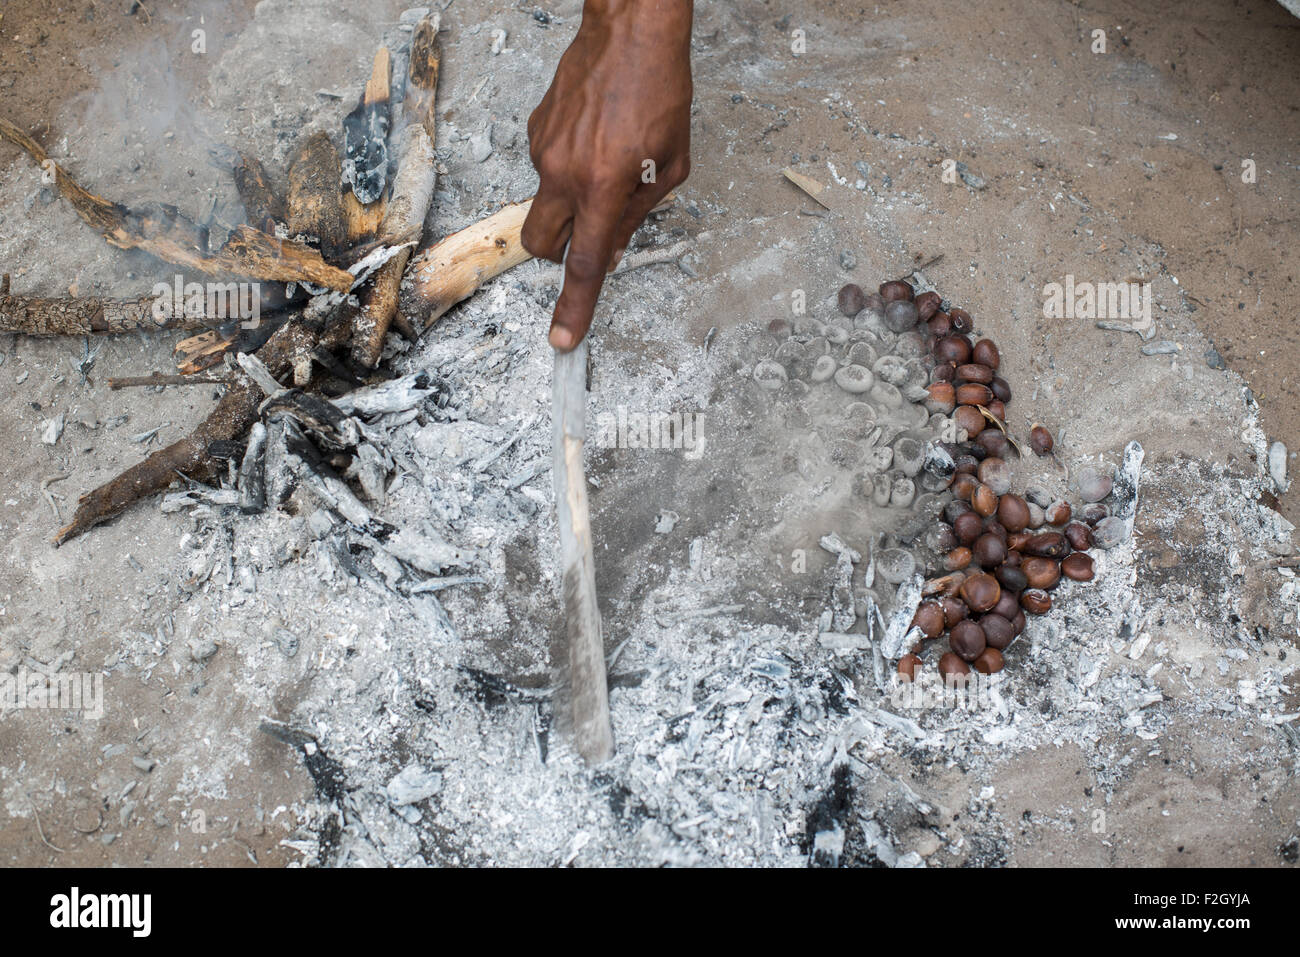 I Boscimani o San persone preparare il cibo in Botswana, Africa Foto Stock